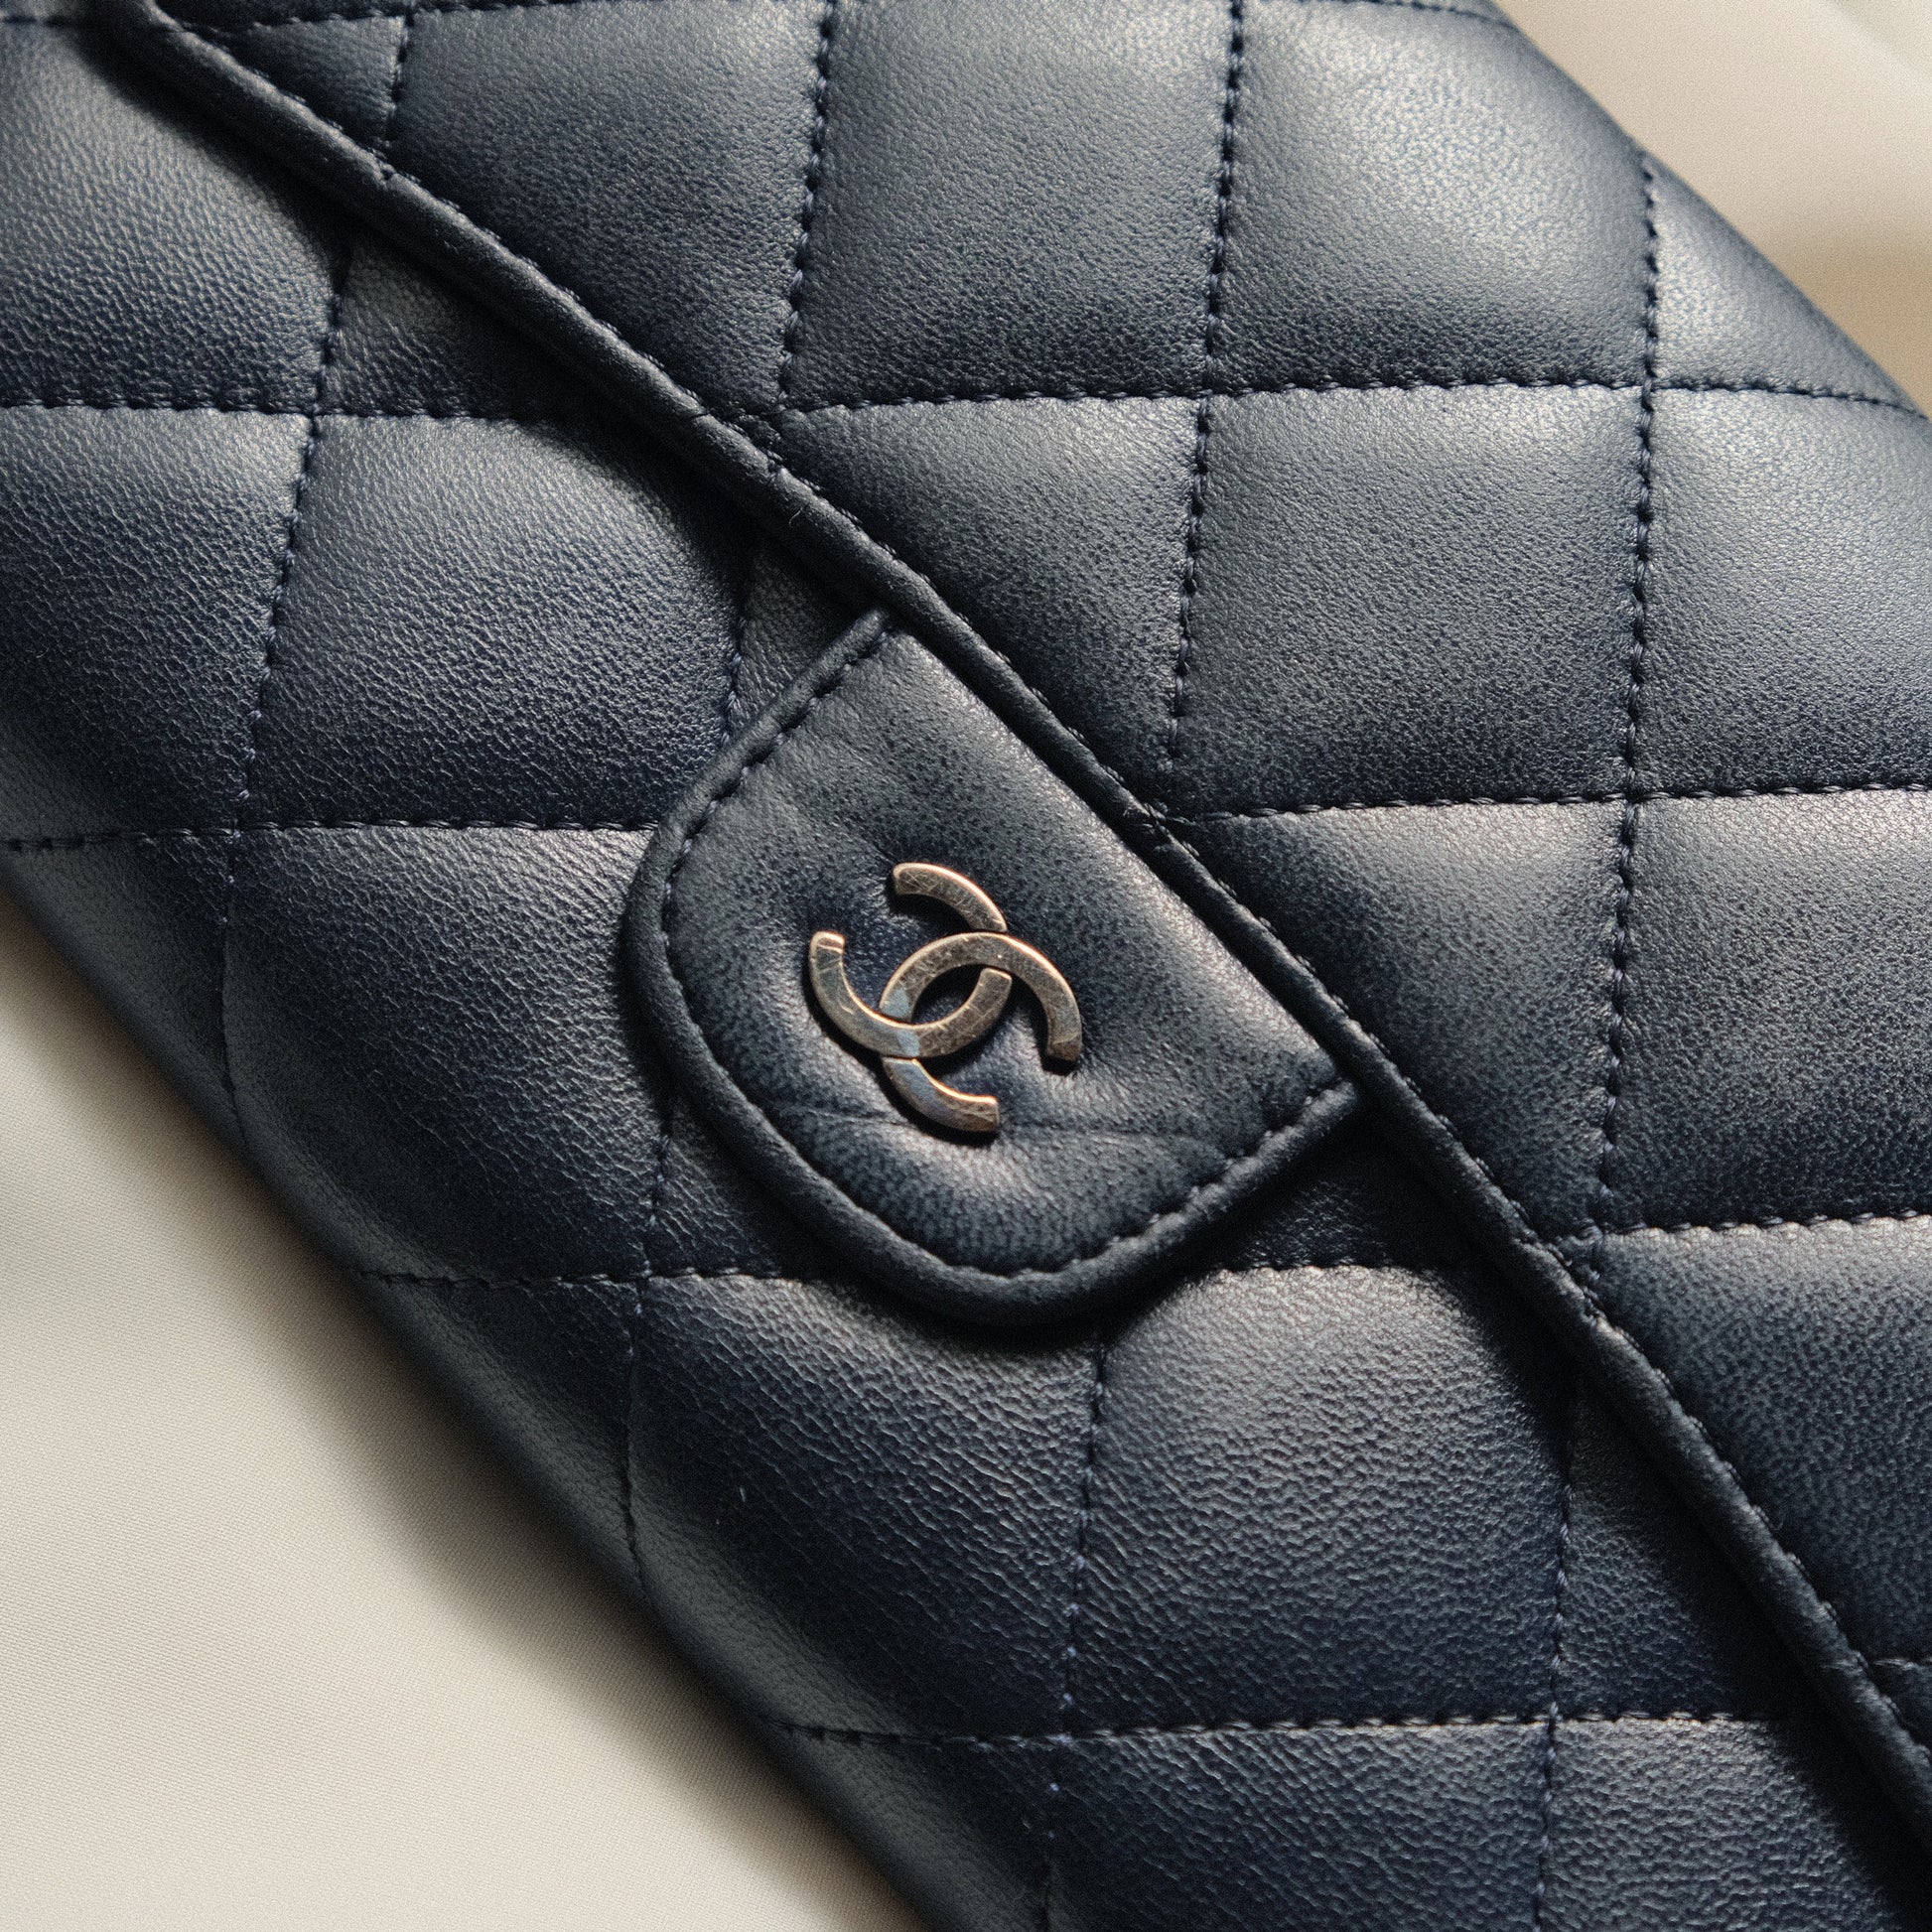 Chanel Vintage Matelasse Lambskin Flap Wallet WOC - The Tanpopo